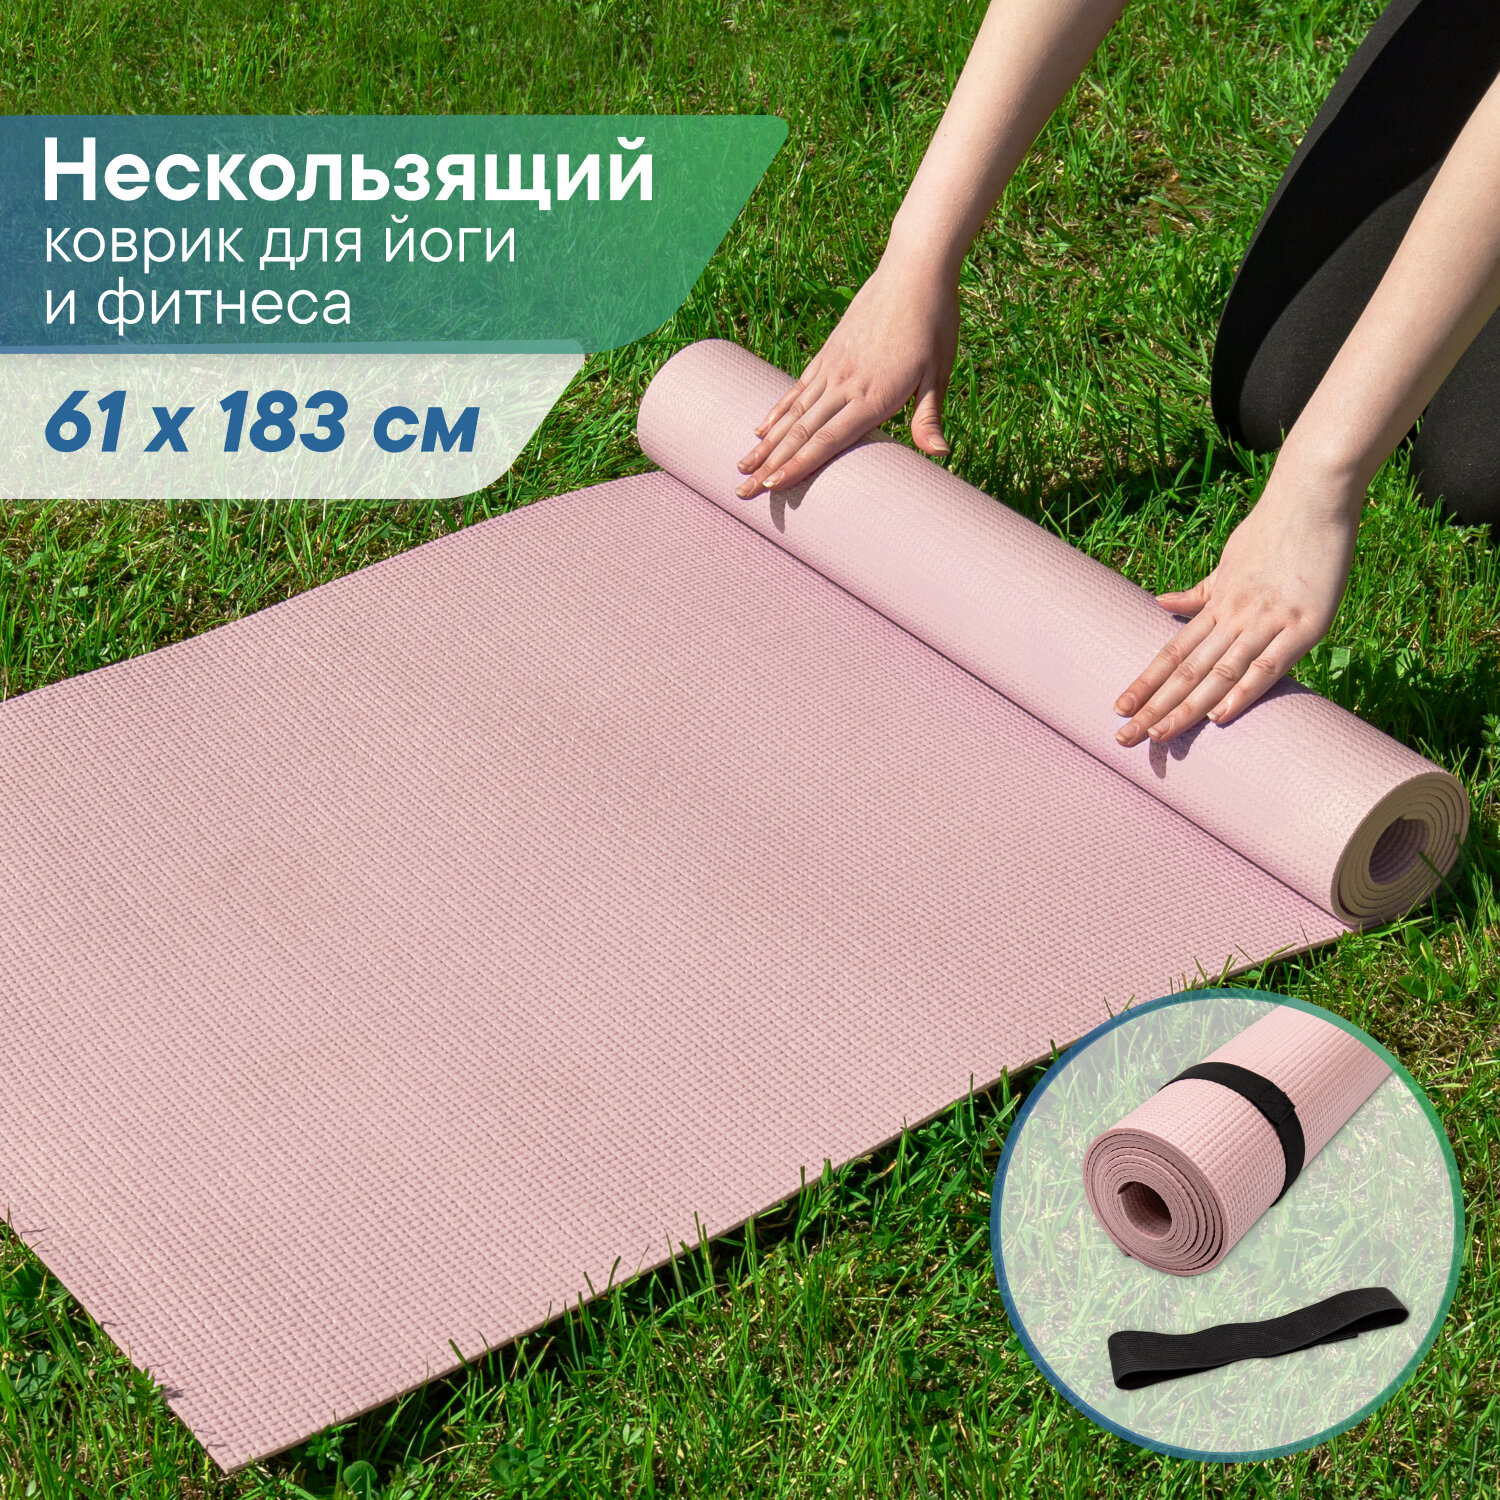 Коврик VILINA спортивный для йоги и фитнеса, растяжки, гимнастики 0,5 см 61х183 см розовый